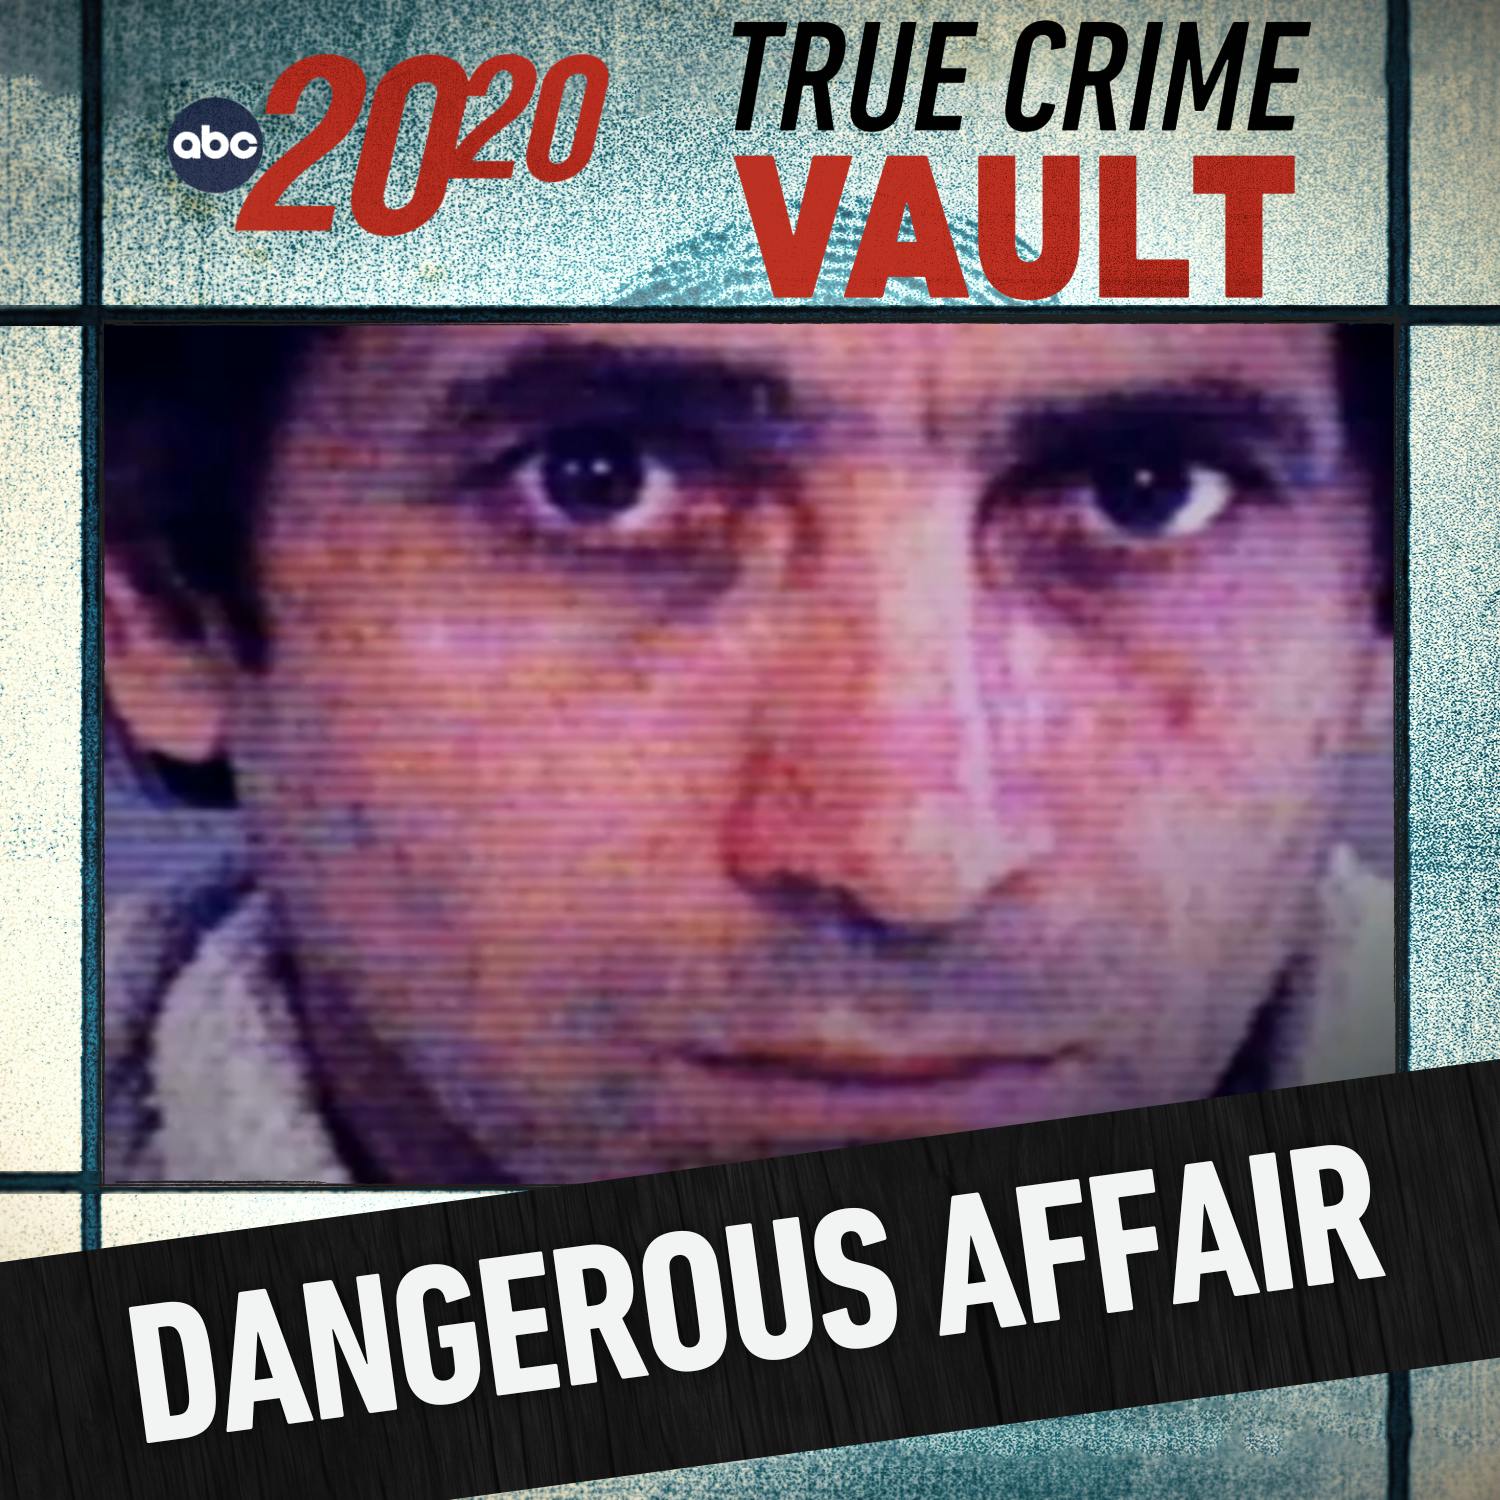 True Crime Vault: A Dangerous Affair by ABC News